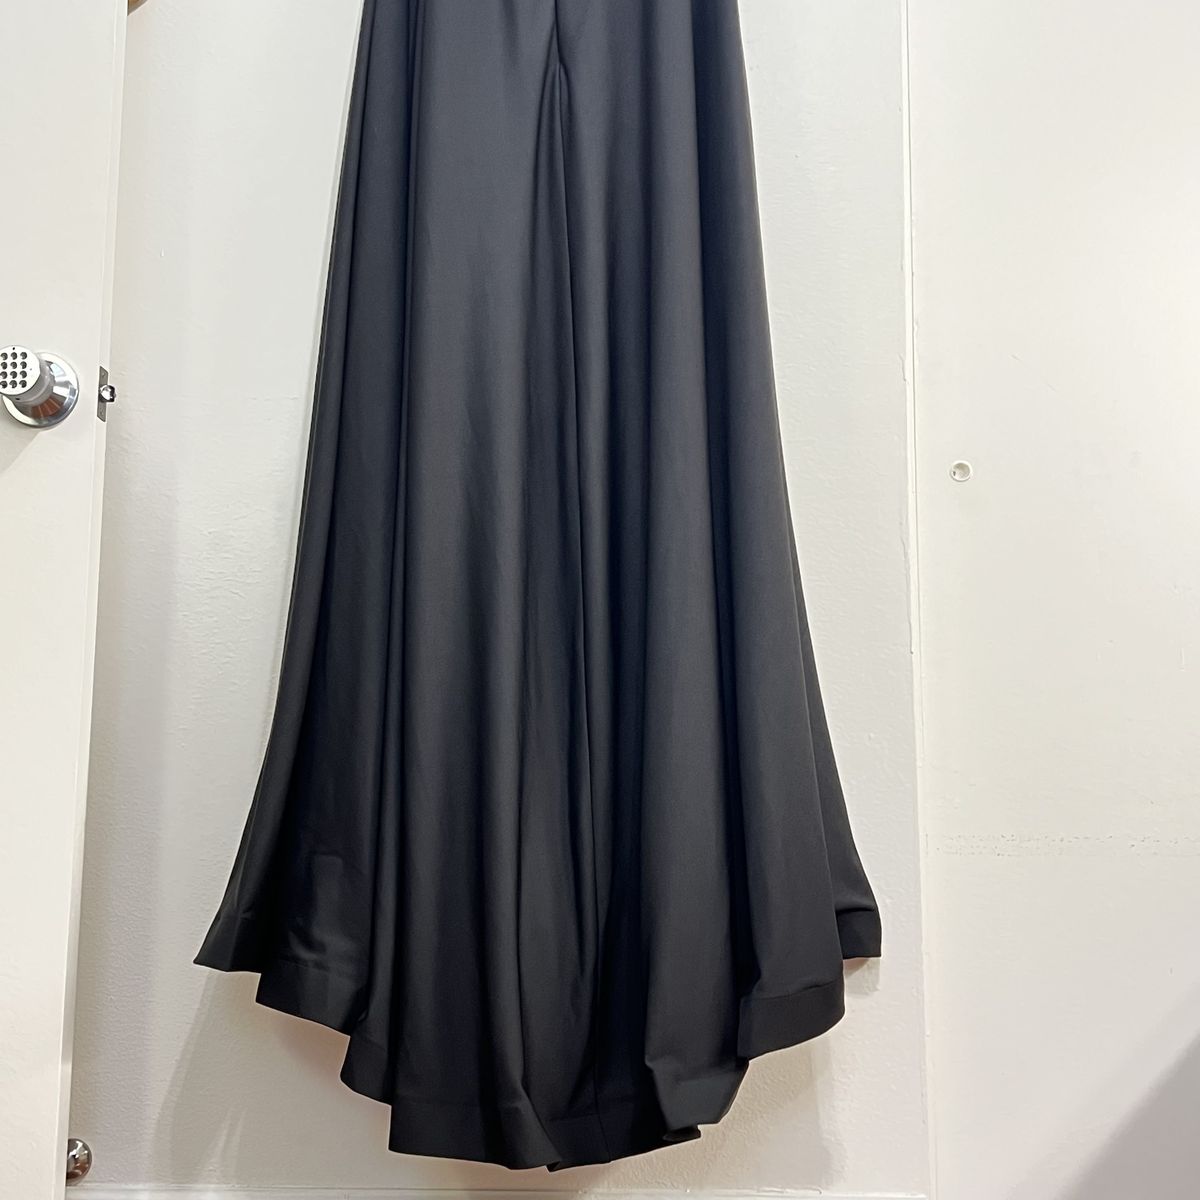 Style 29007 La Femme Plus Size 22 Prom Off The Shoulder Black Side Slit Dress on Queenly